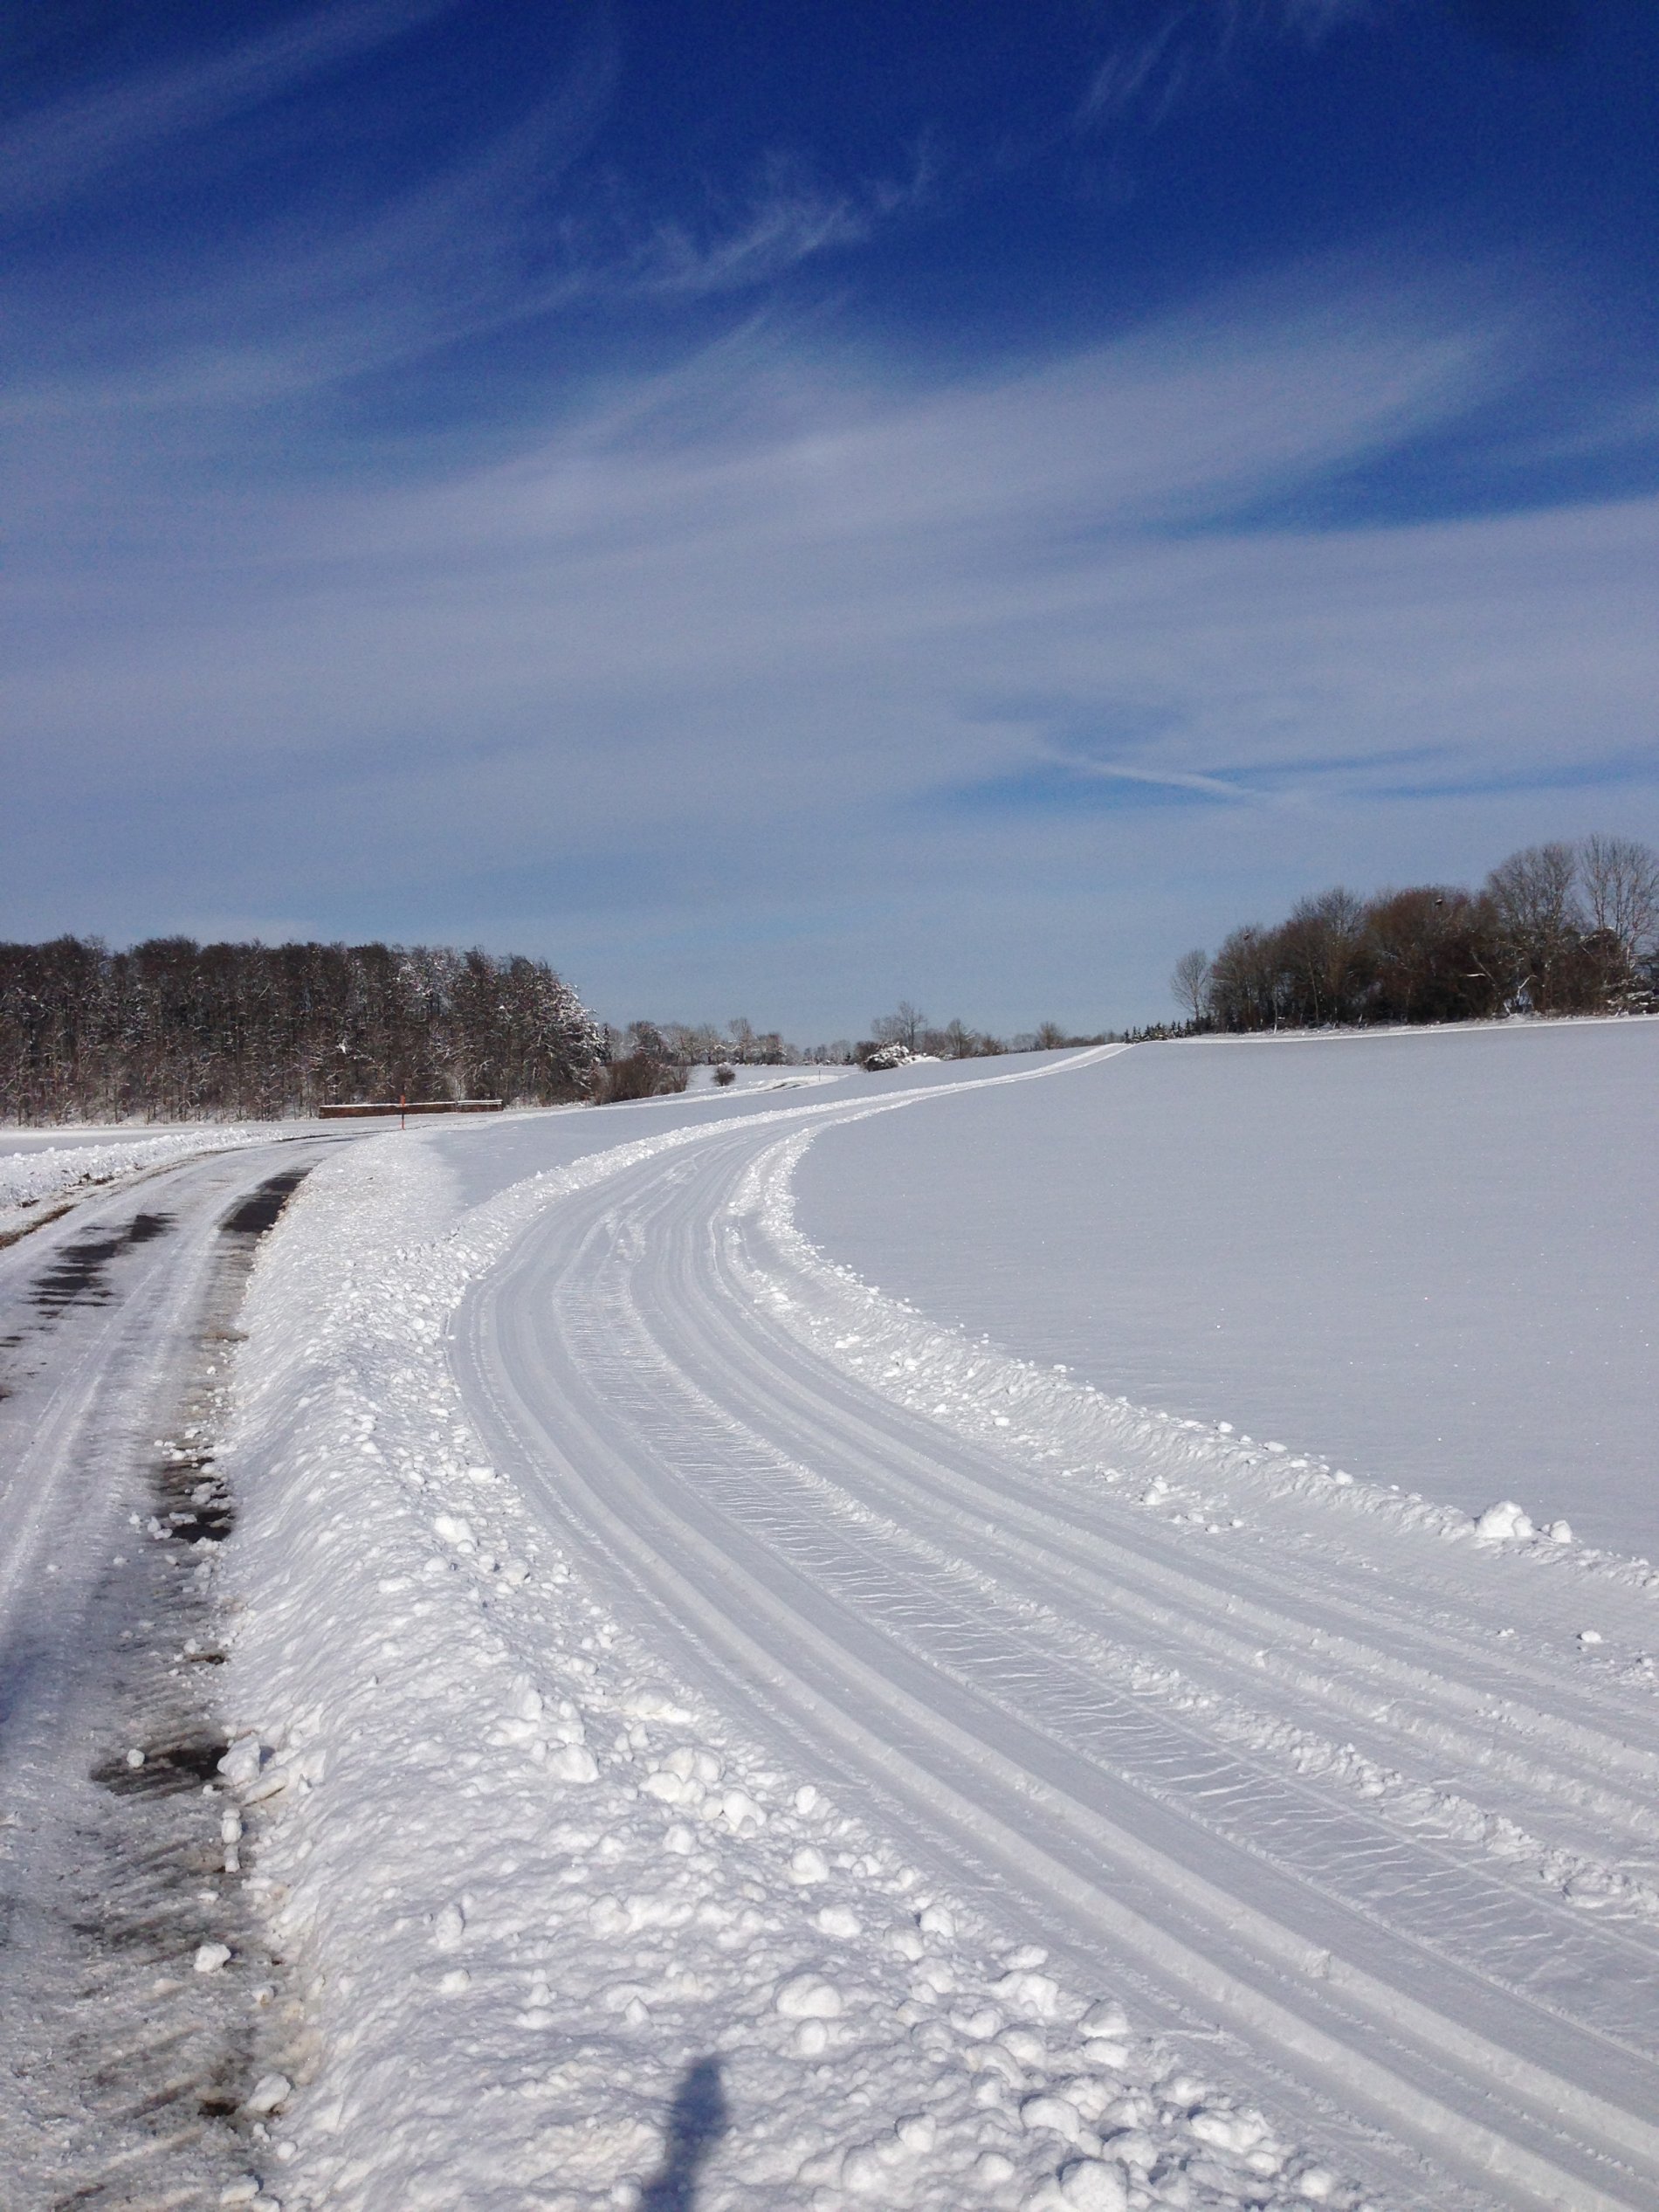 Eine zweispurige klassische Loipe verläuft neben einem geräumten Weg durch eine schneebedeckte Landschaft. Weiter hinten sind Waldstücke. Der Himmel ist blau.